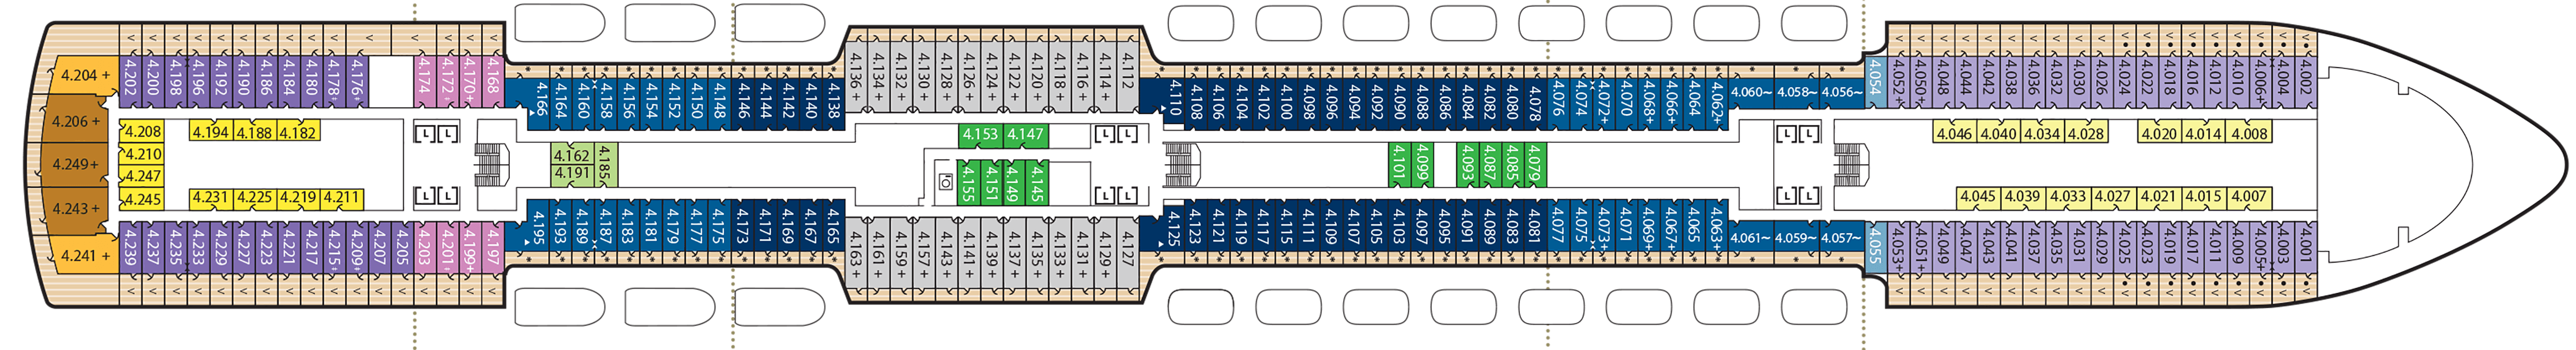 Queen Anne - Cunard Line - Deck 4 (Deck 4)